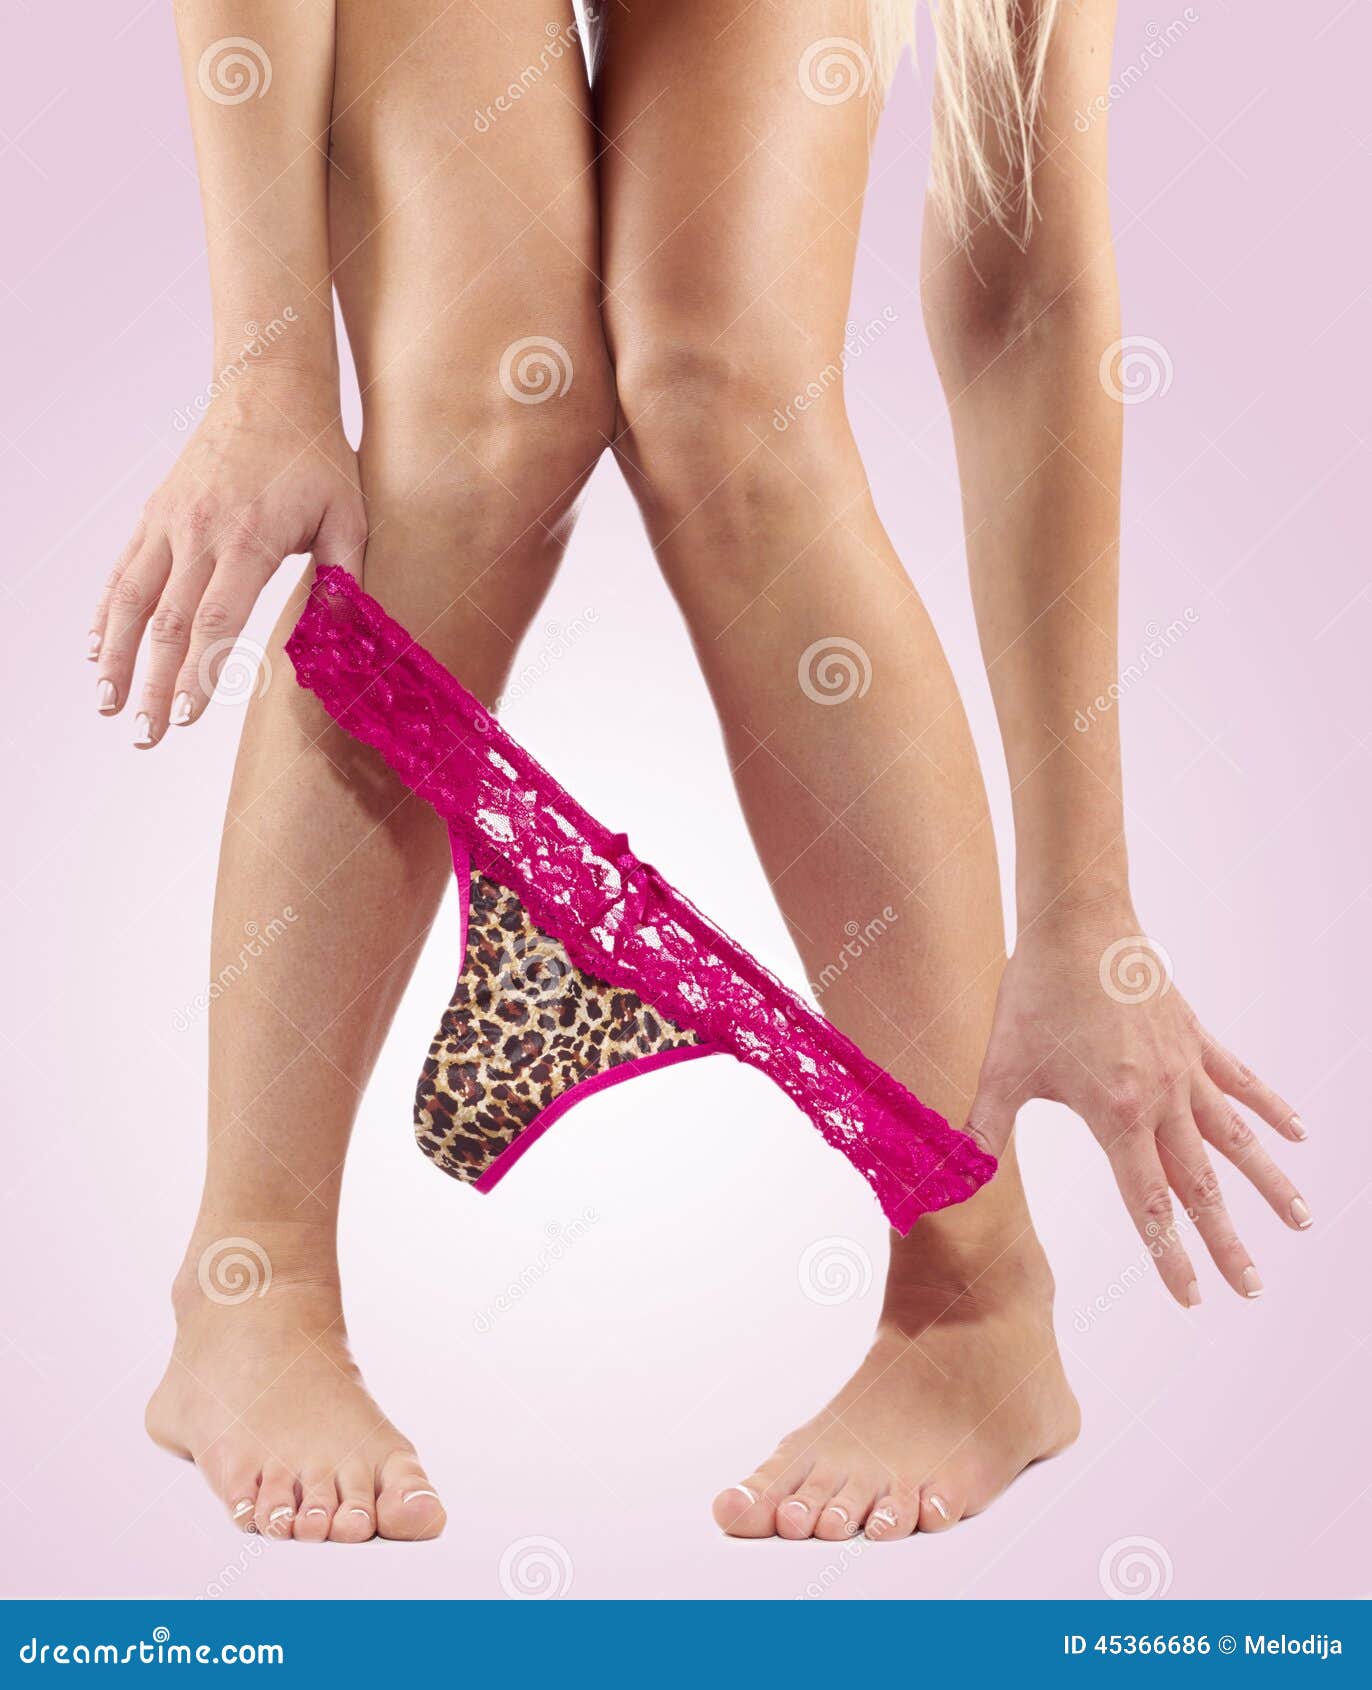 Legs pulling panties down. stock photo. Image of panties - 45366686